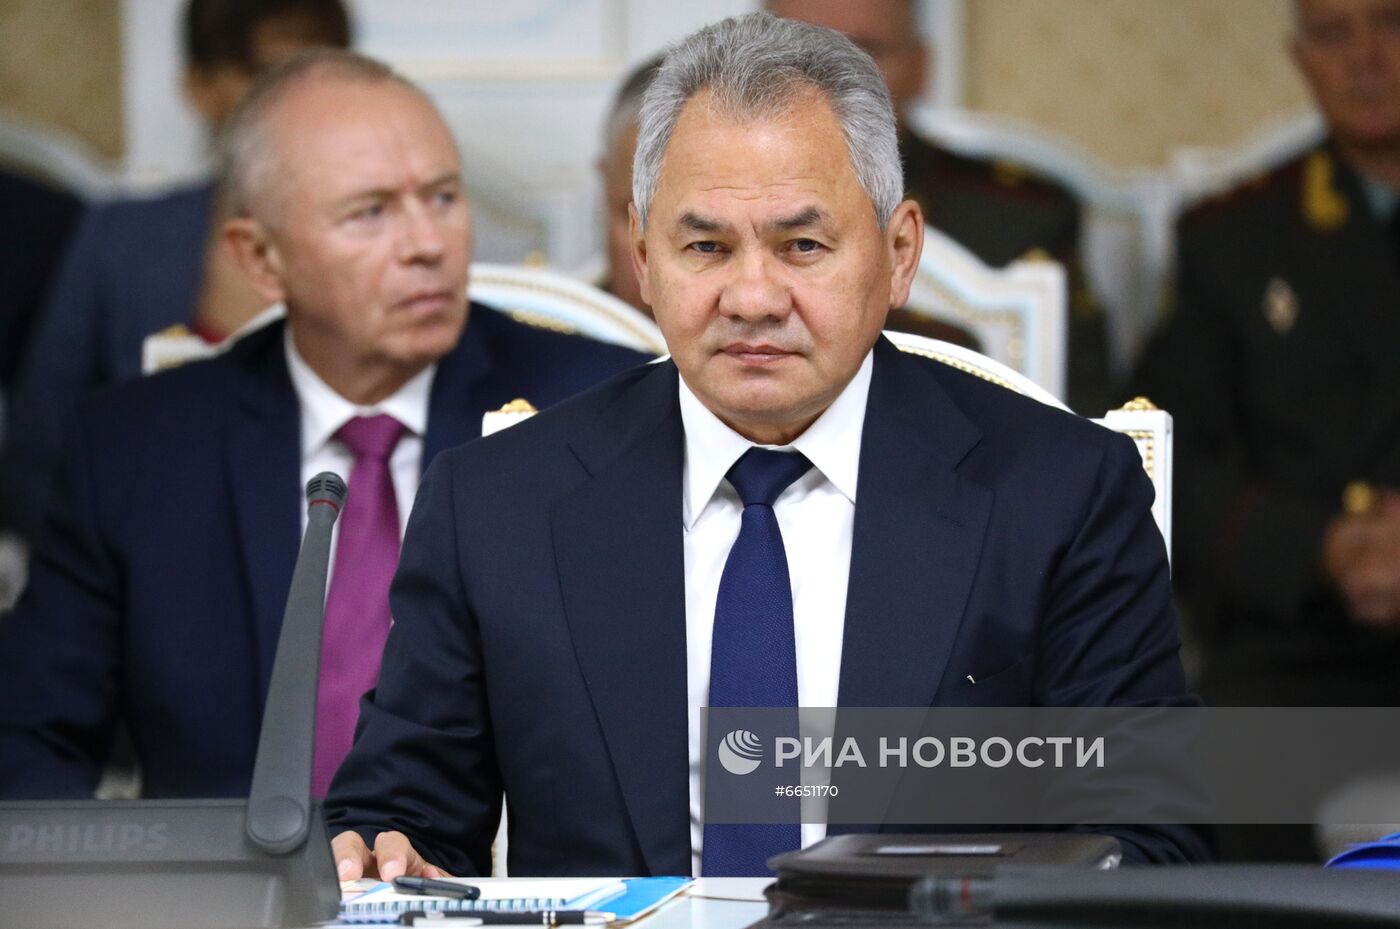 Совместное заседание министров иностранных дел, министров обороны и секретарей совбезов ОДКБ в Душанбе